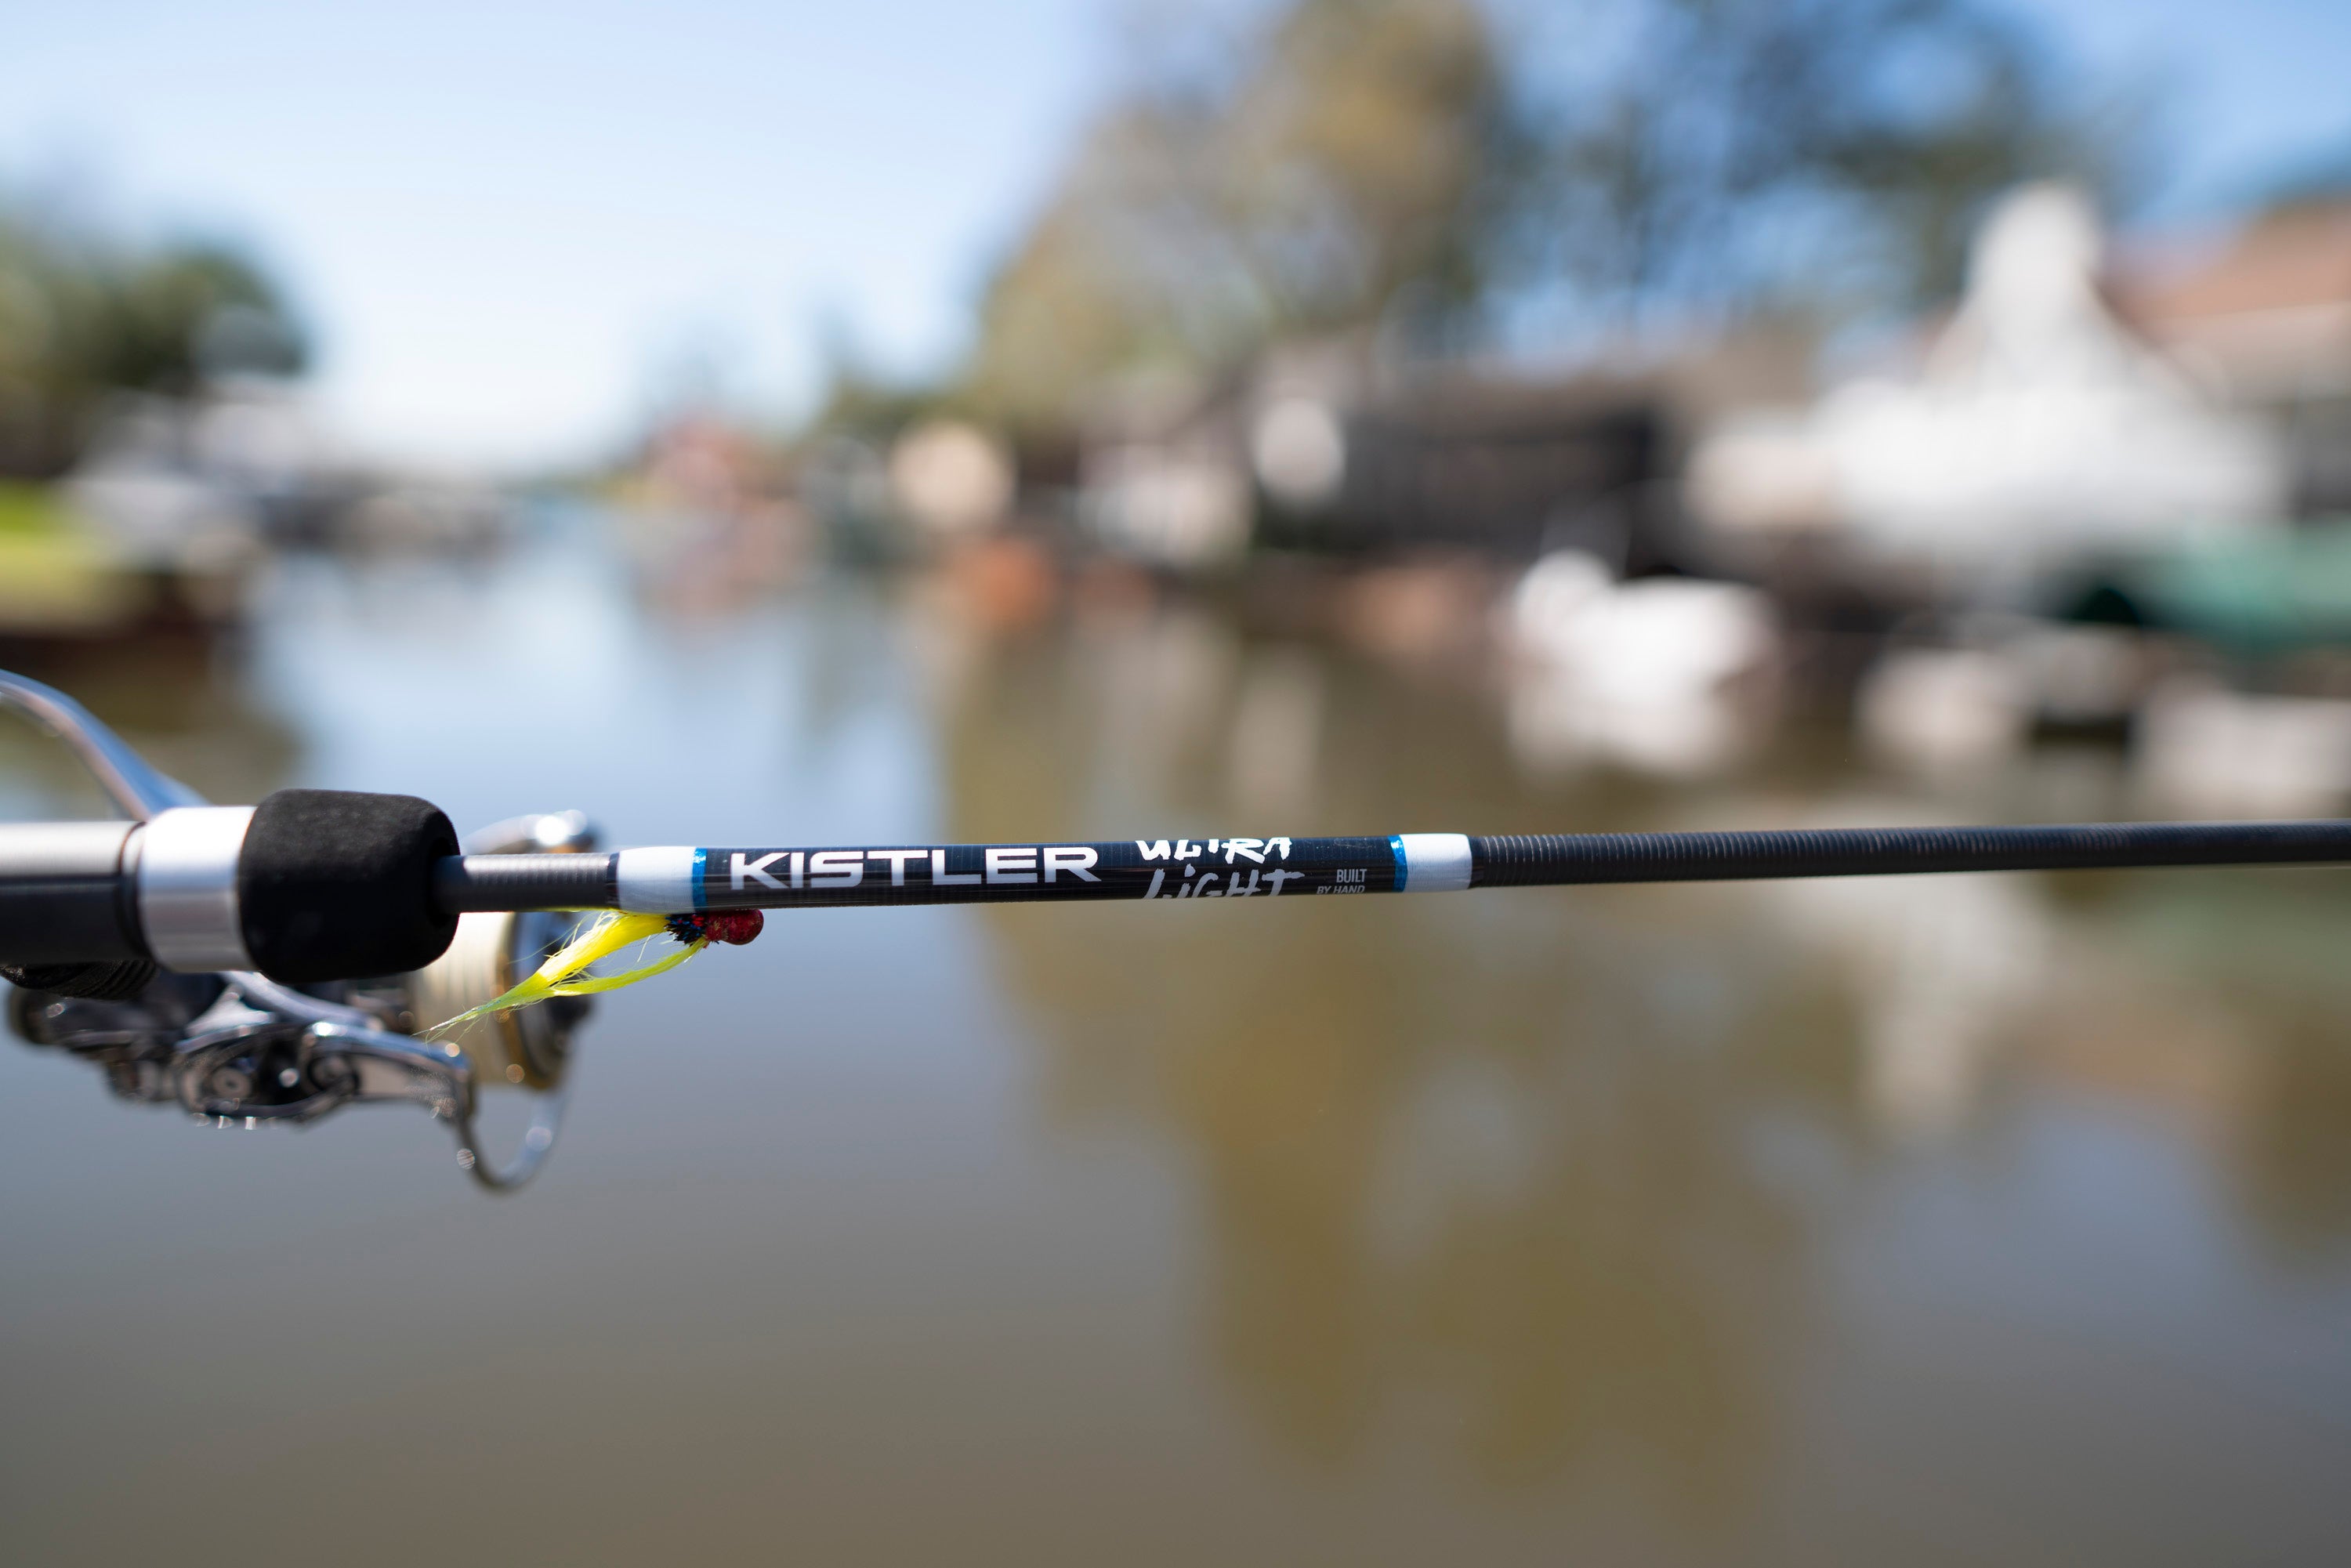 The perfect match🤝 • • • #kistlerrods #fishing #bassfishing